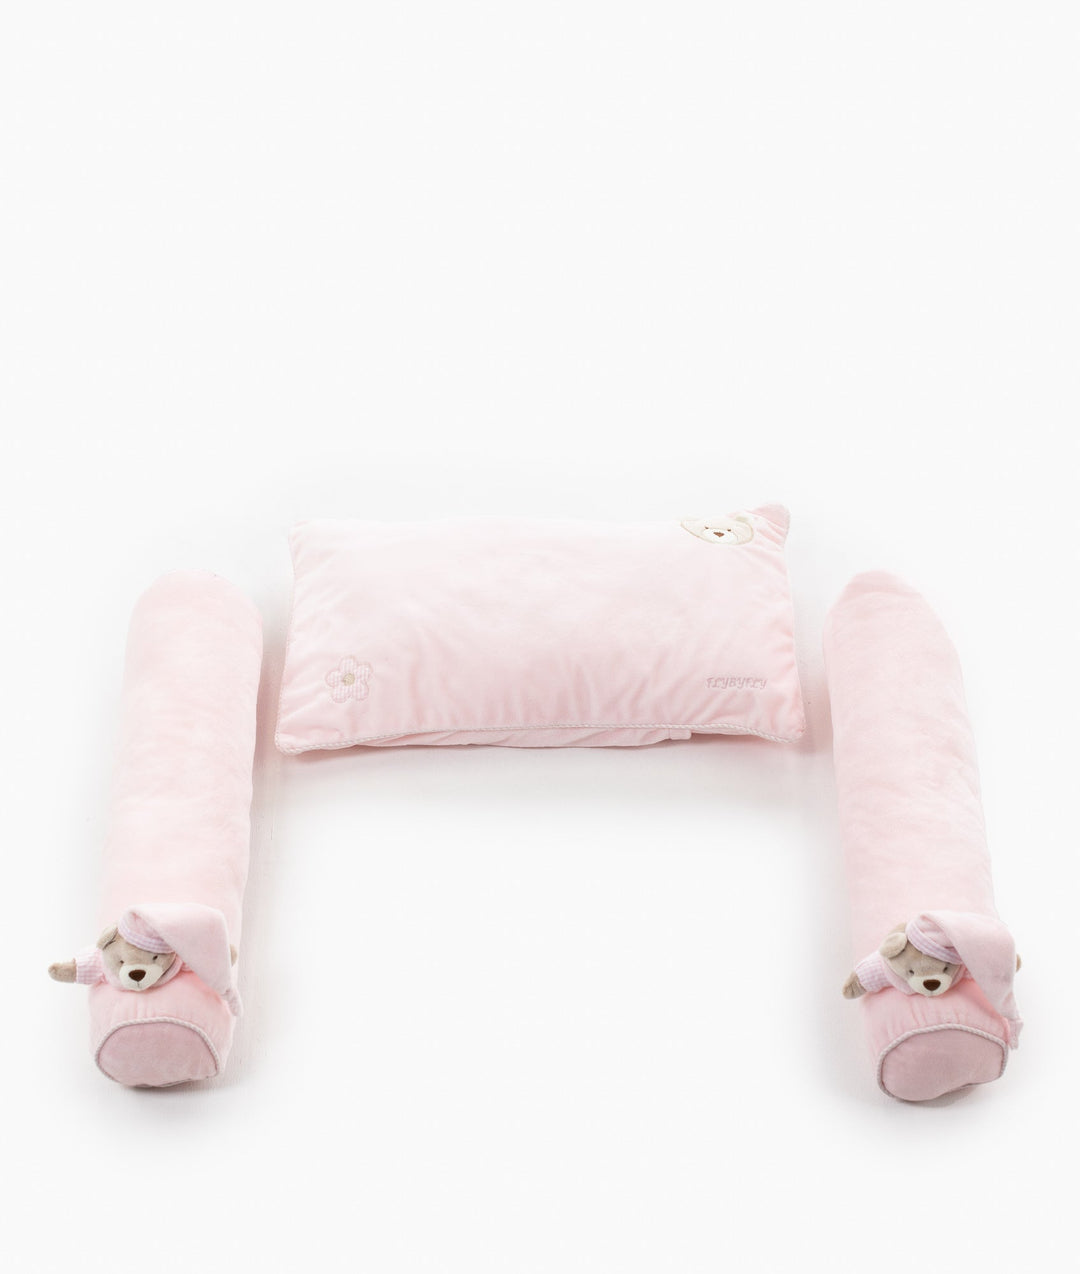 Pillow & Bolster Set - Pink